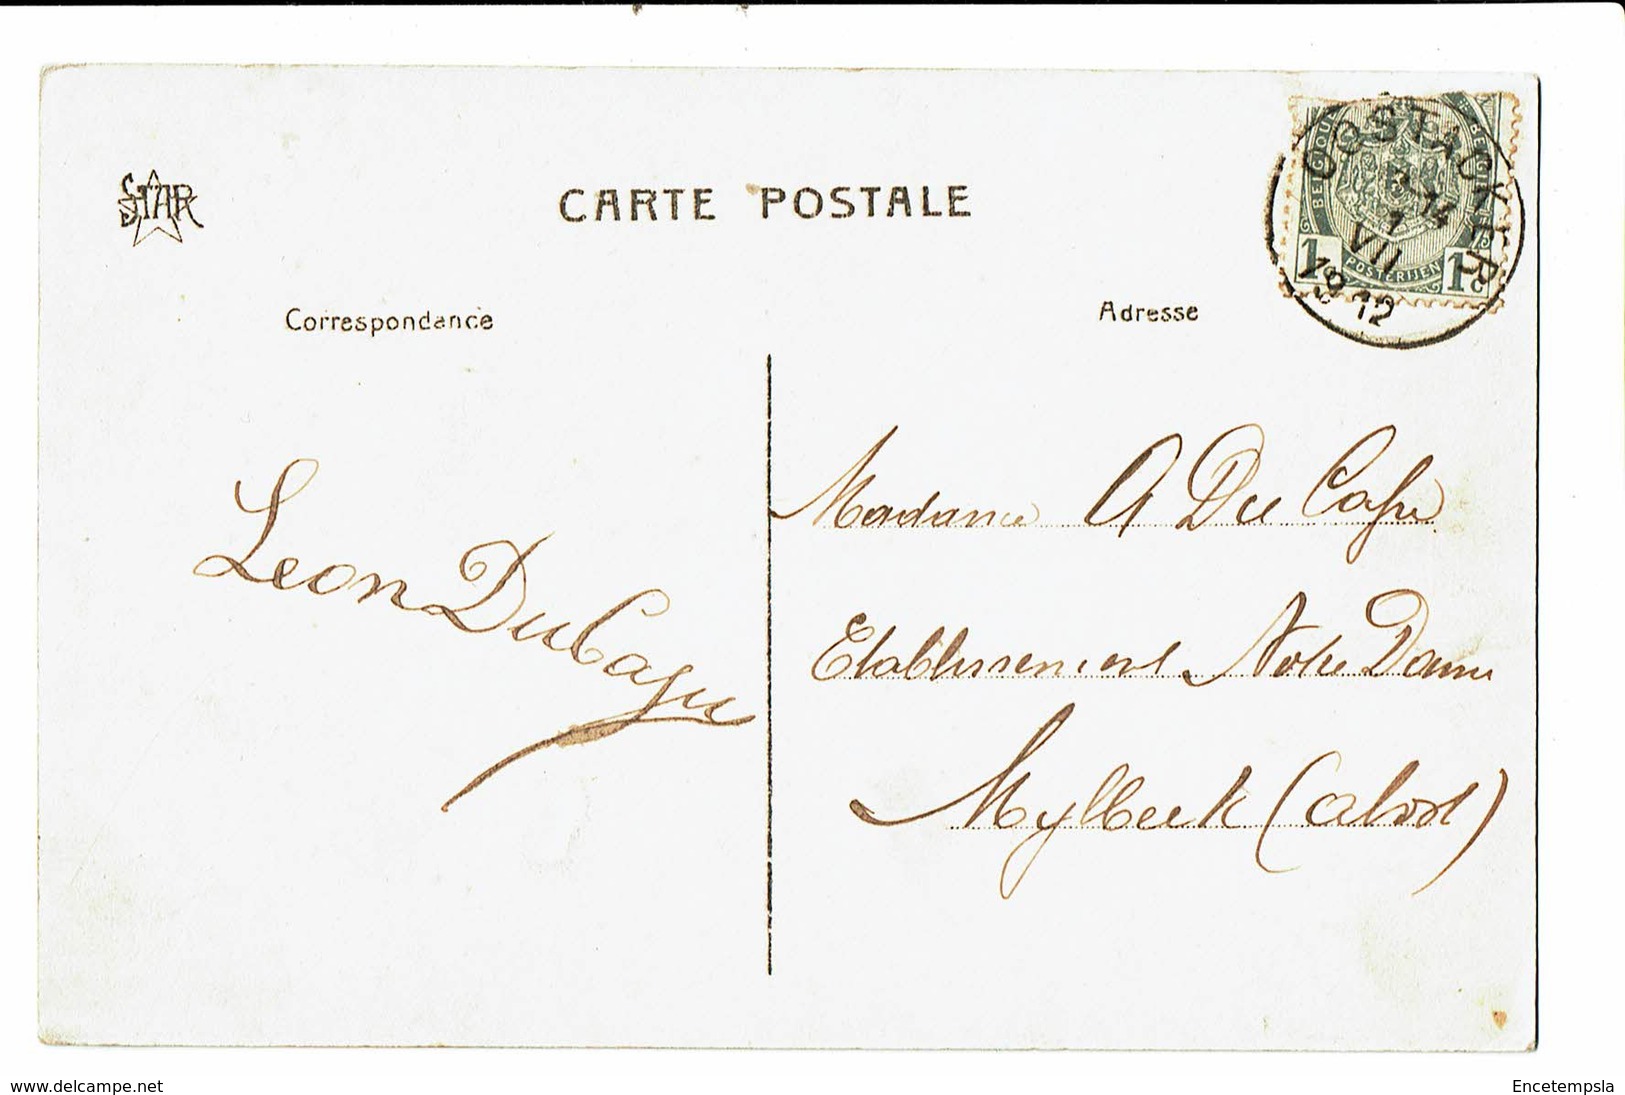 CPA - Carte Postale-Belgique Oostacker - Lourdes -L'église-1912 VM4706 - Gent